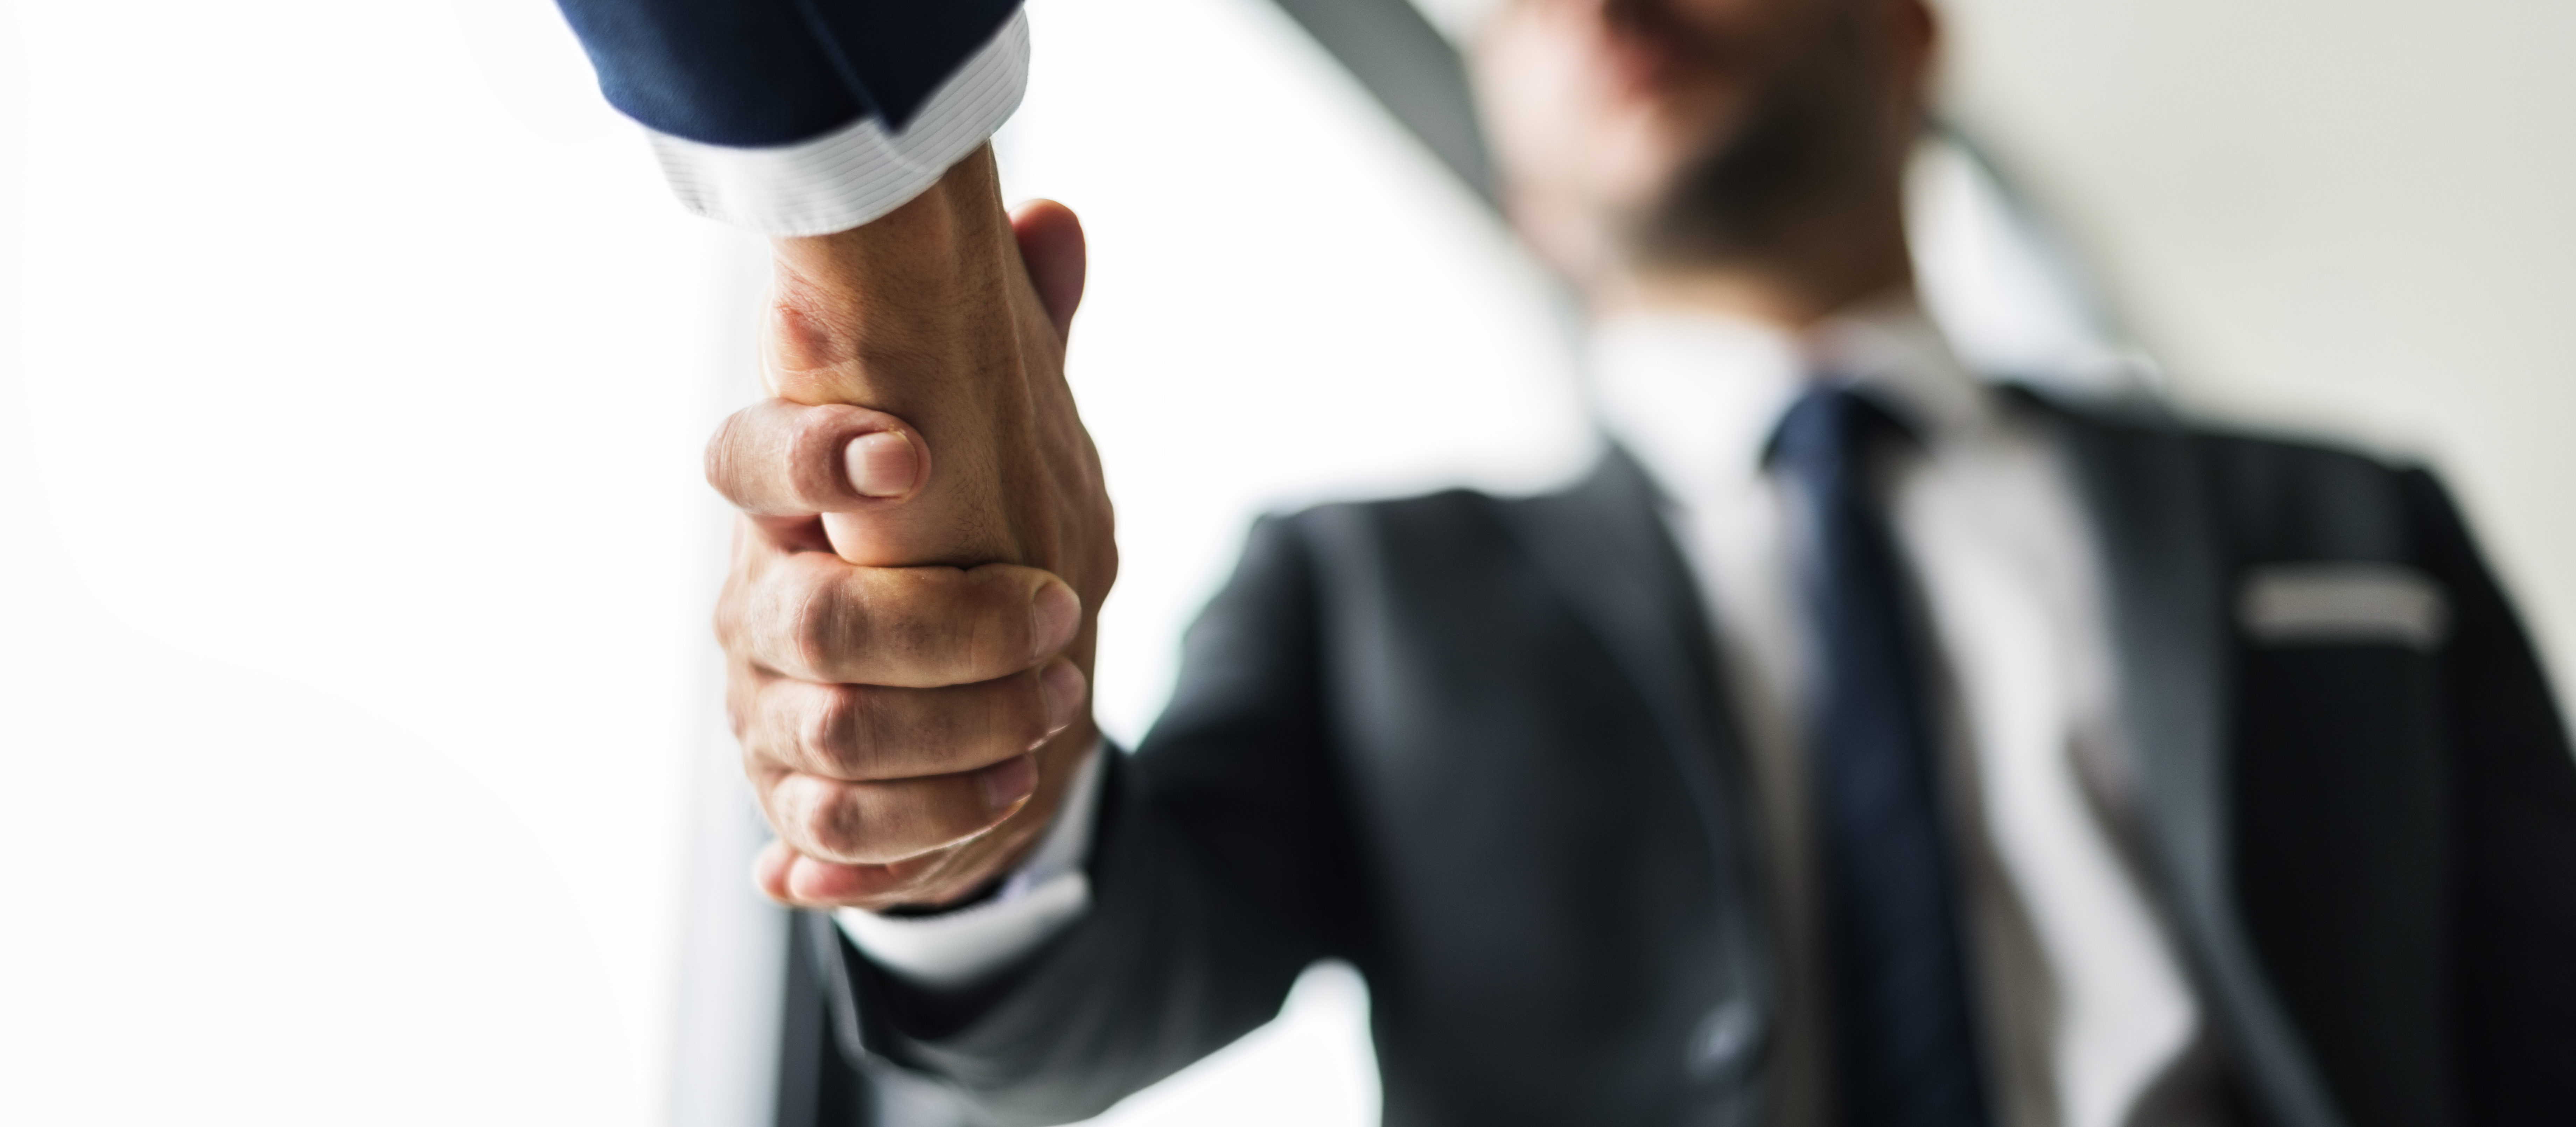 Handshake business men concept